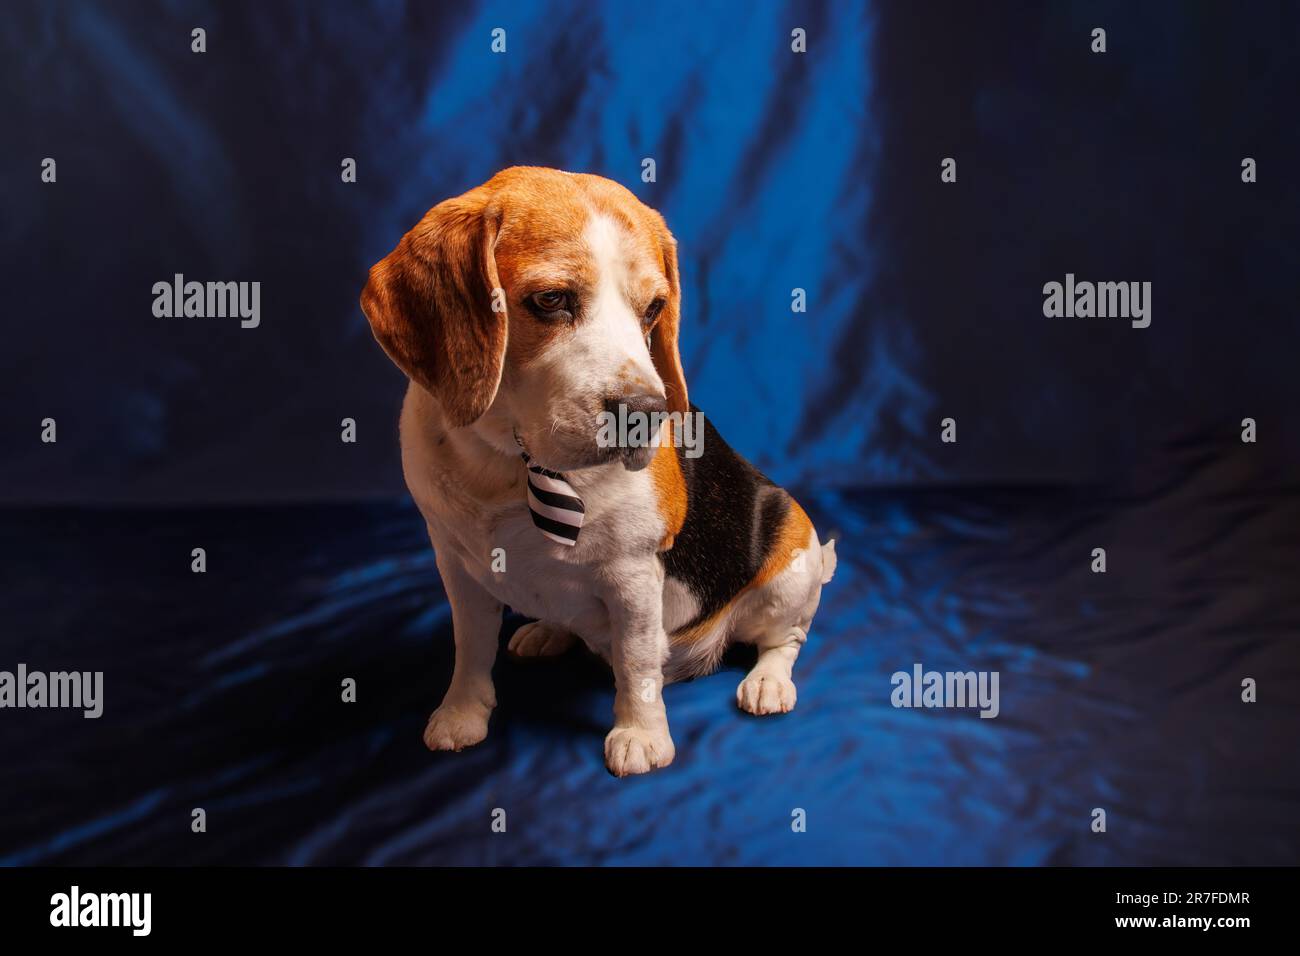 https://c8.alamy.com/comp/2R7FDMR/beagle-purebred-dog-photo-sesion-in-studio-2R7FDMR.jpg